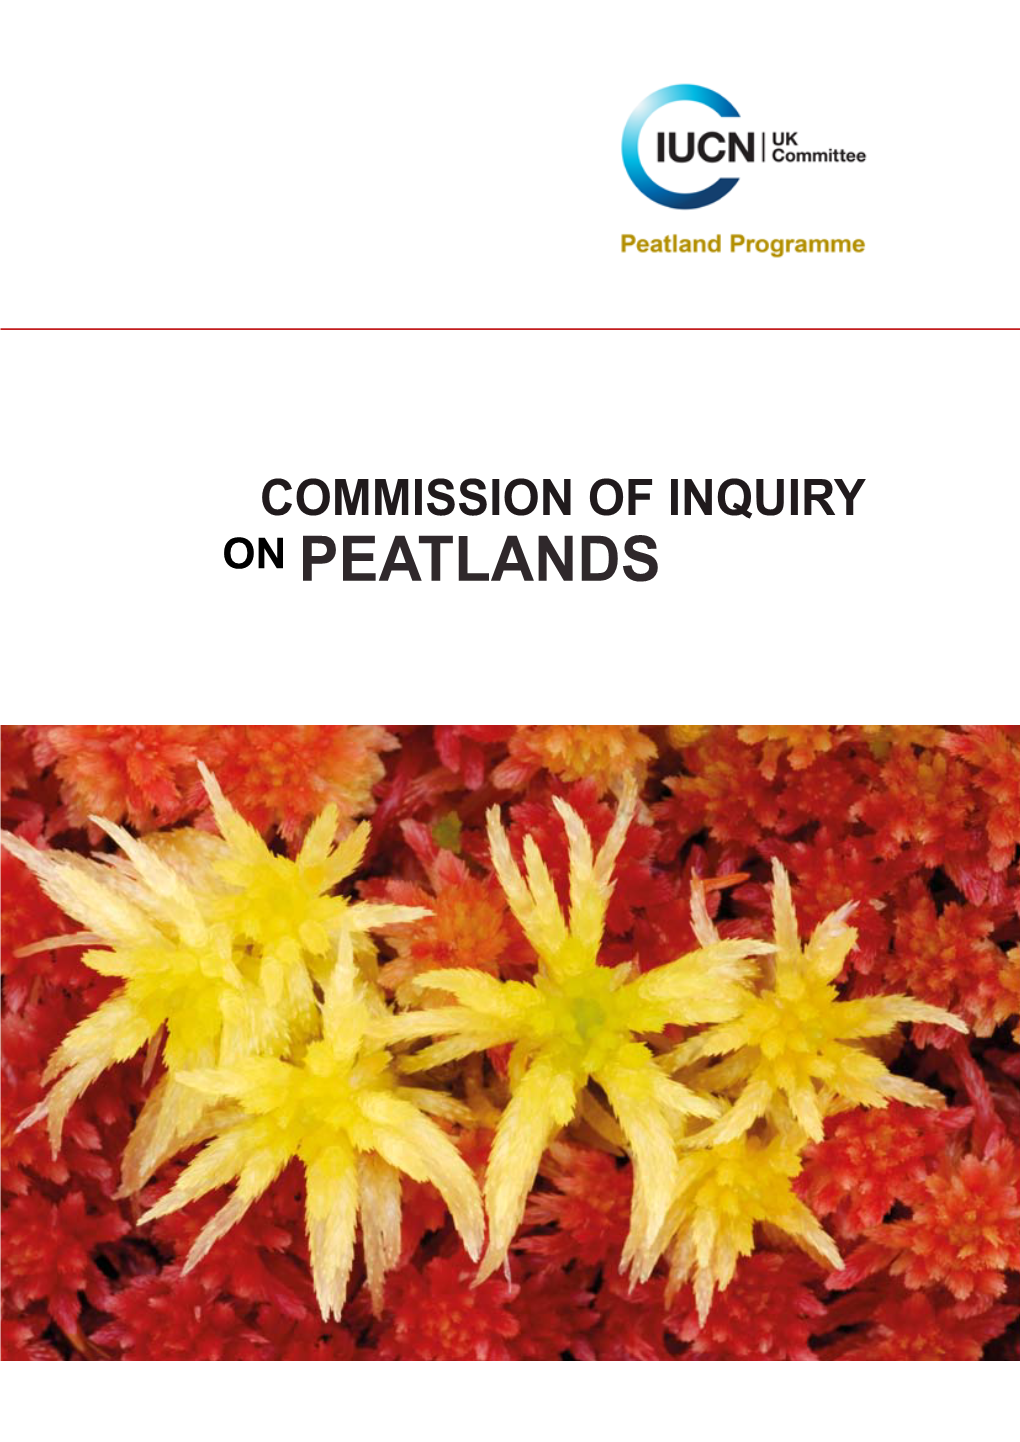 IUCN UK Commission of Inquiry on Peatlands